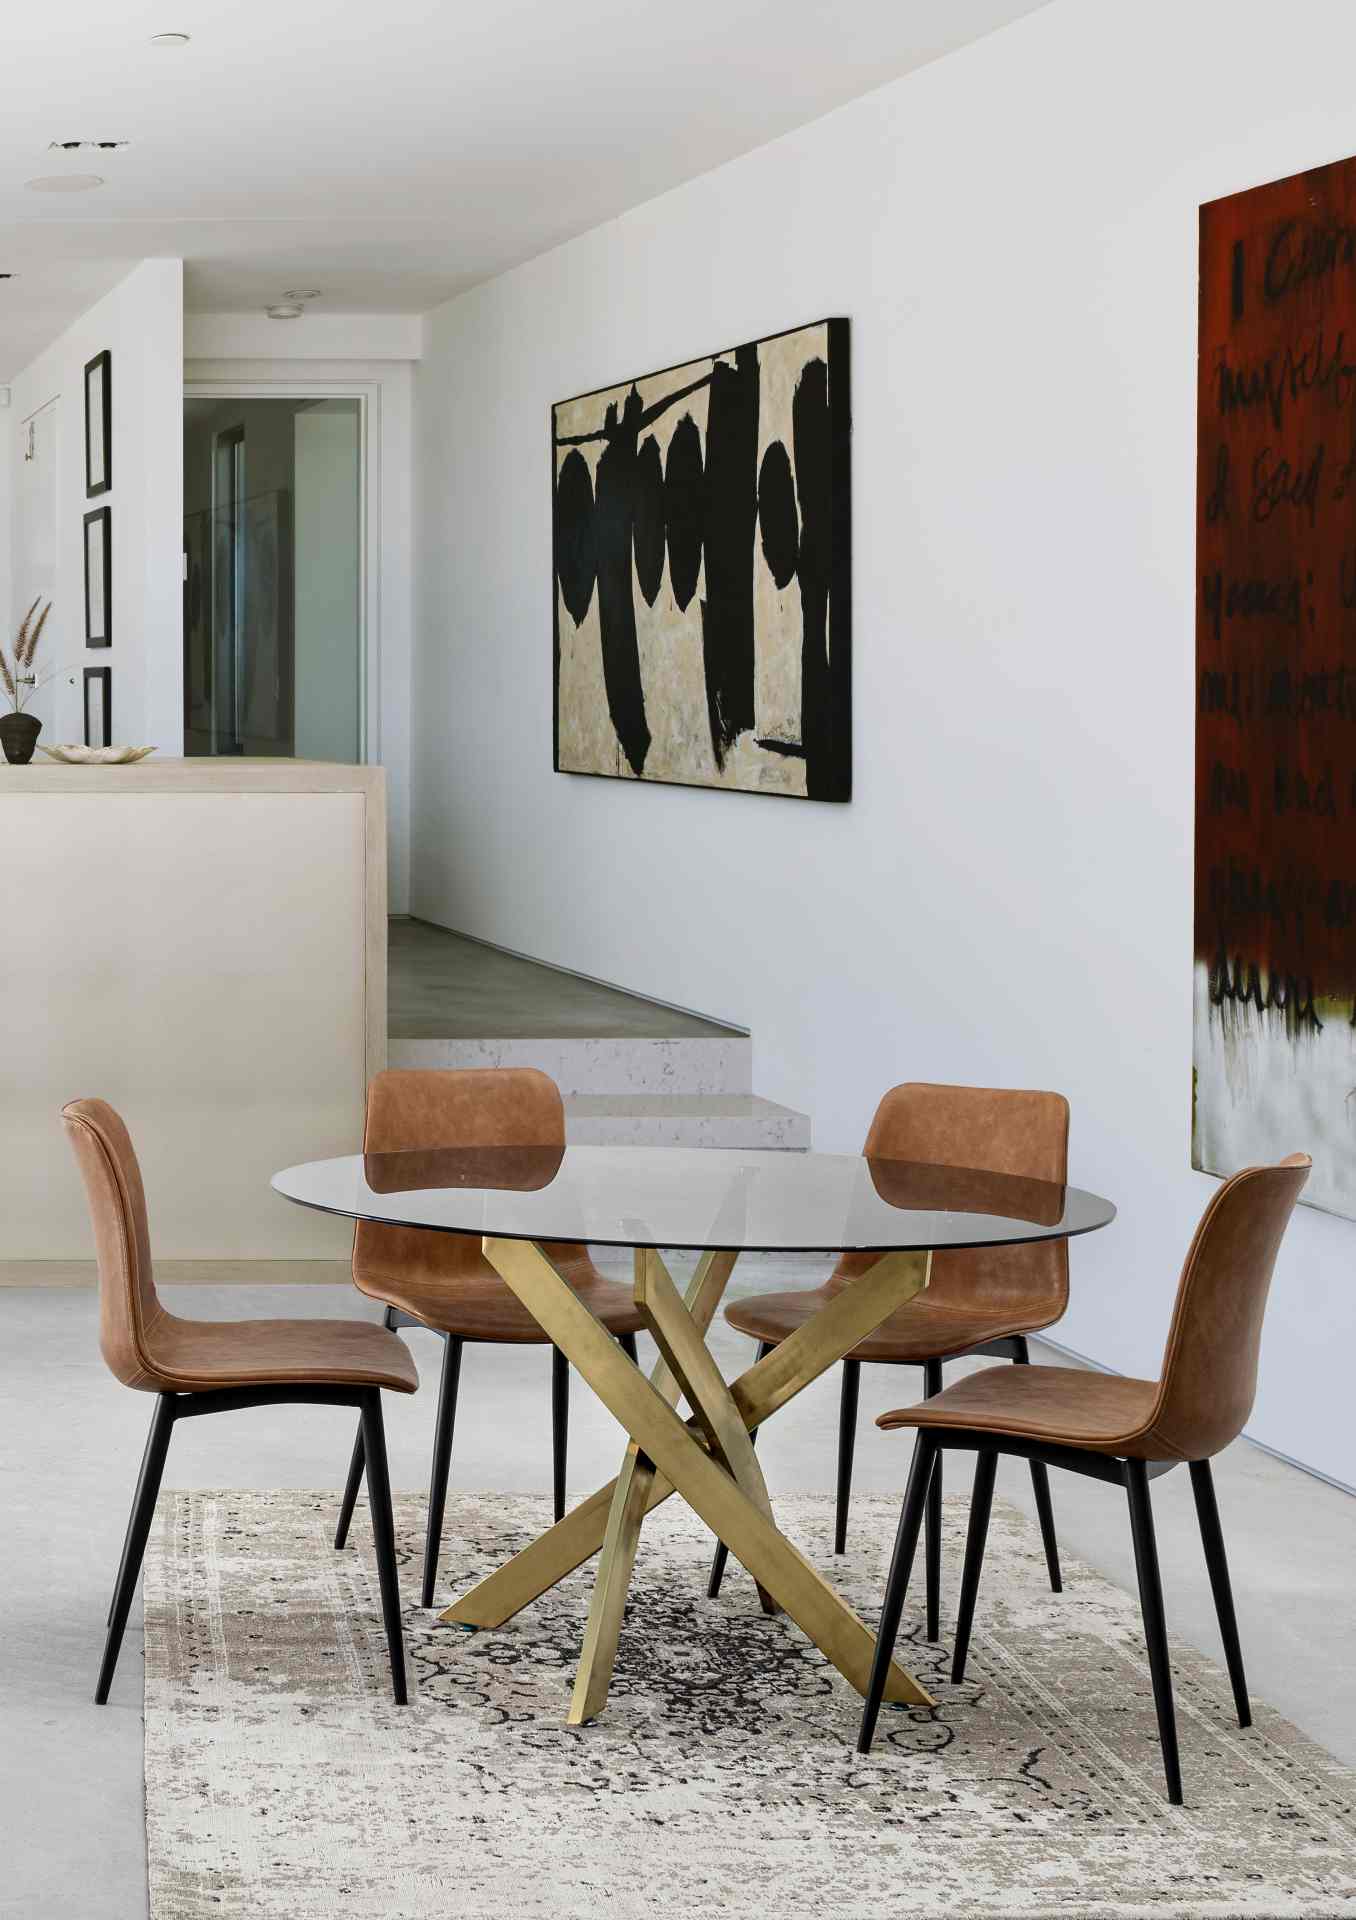 Der Esszimmerstuhl Kyra überzeugt mit seinem modernen Design. Gefertigt wurde der Stuhl aus Kunstleder, welcher einen Cognac Farbton besitzt. Das Gestell ist aus Metall und ist Schwarz. Die Sitzhöhe beträgt 44 cm.